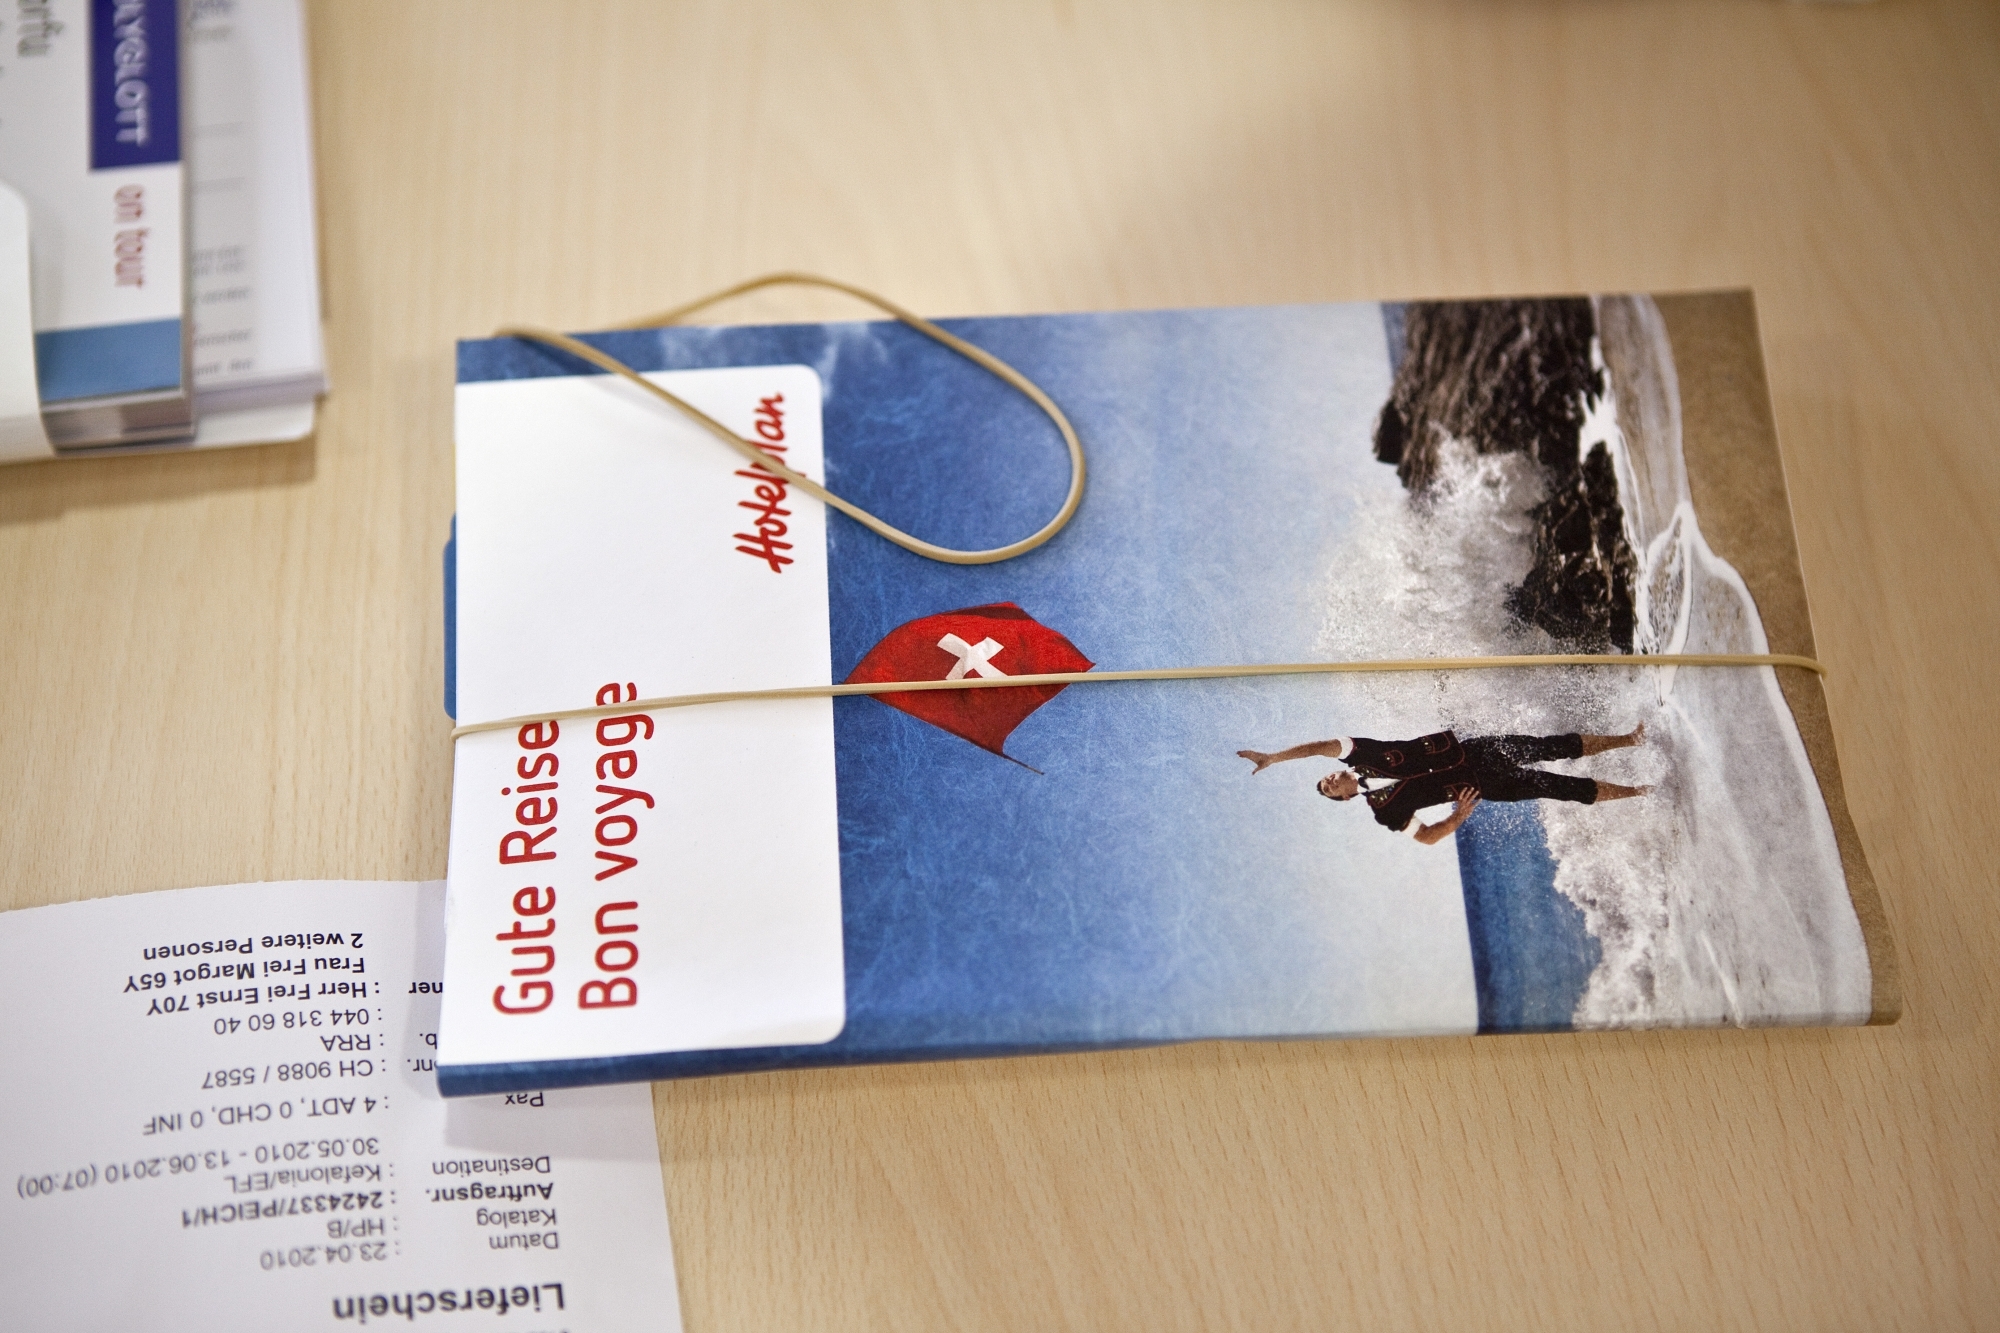 Le tour-opérateur Hotelplan a décidé de retirer les trois agences Travelhouse existant en Suisse romande.